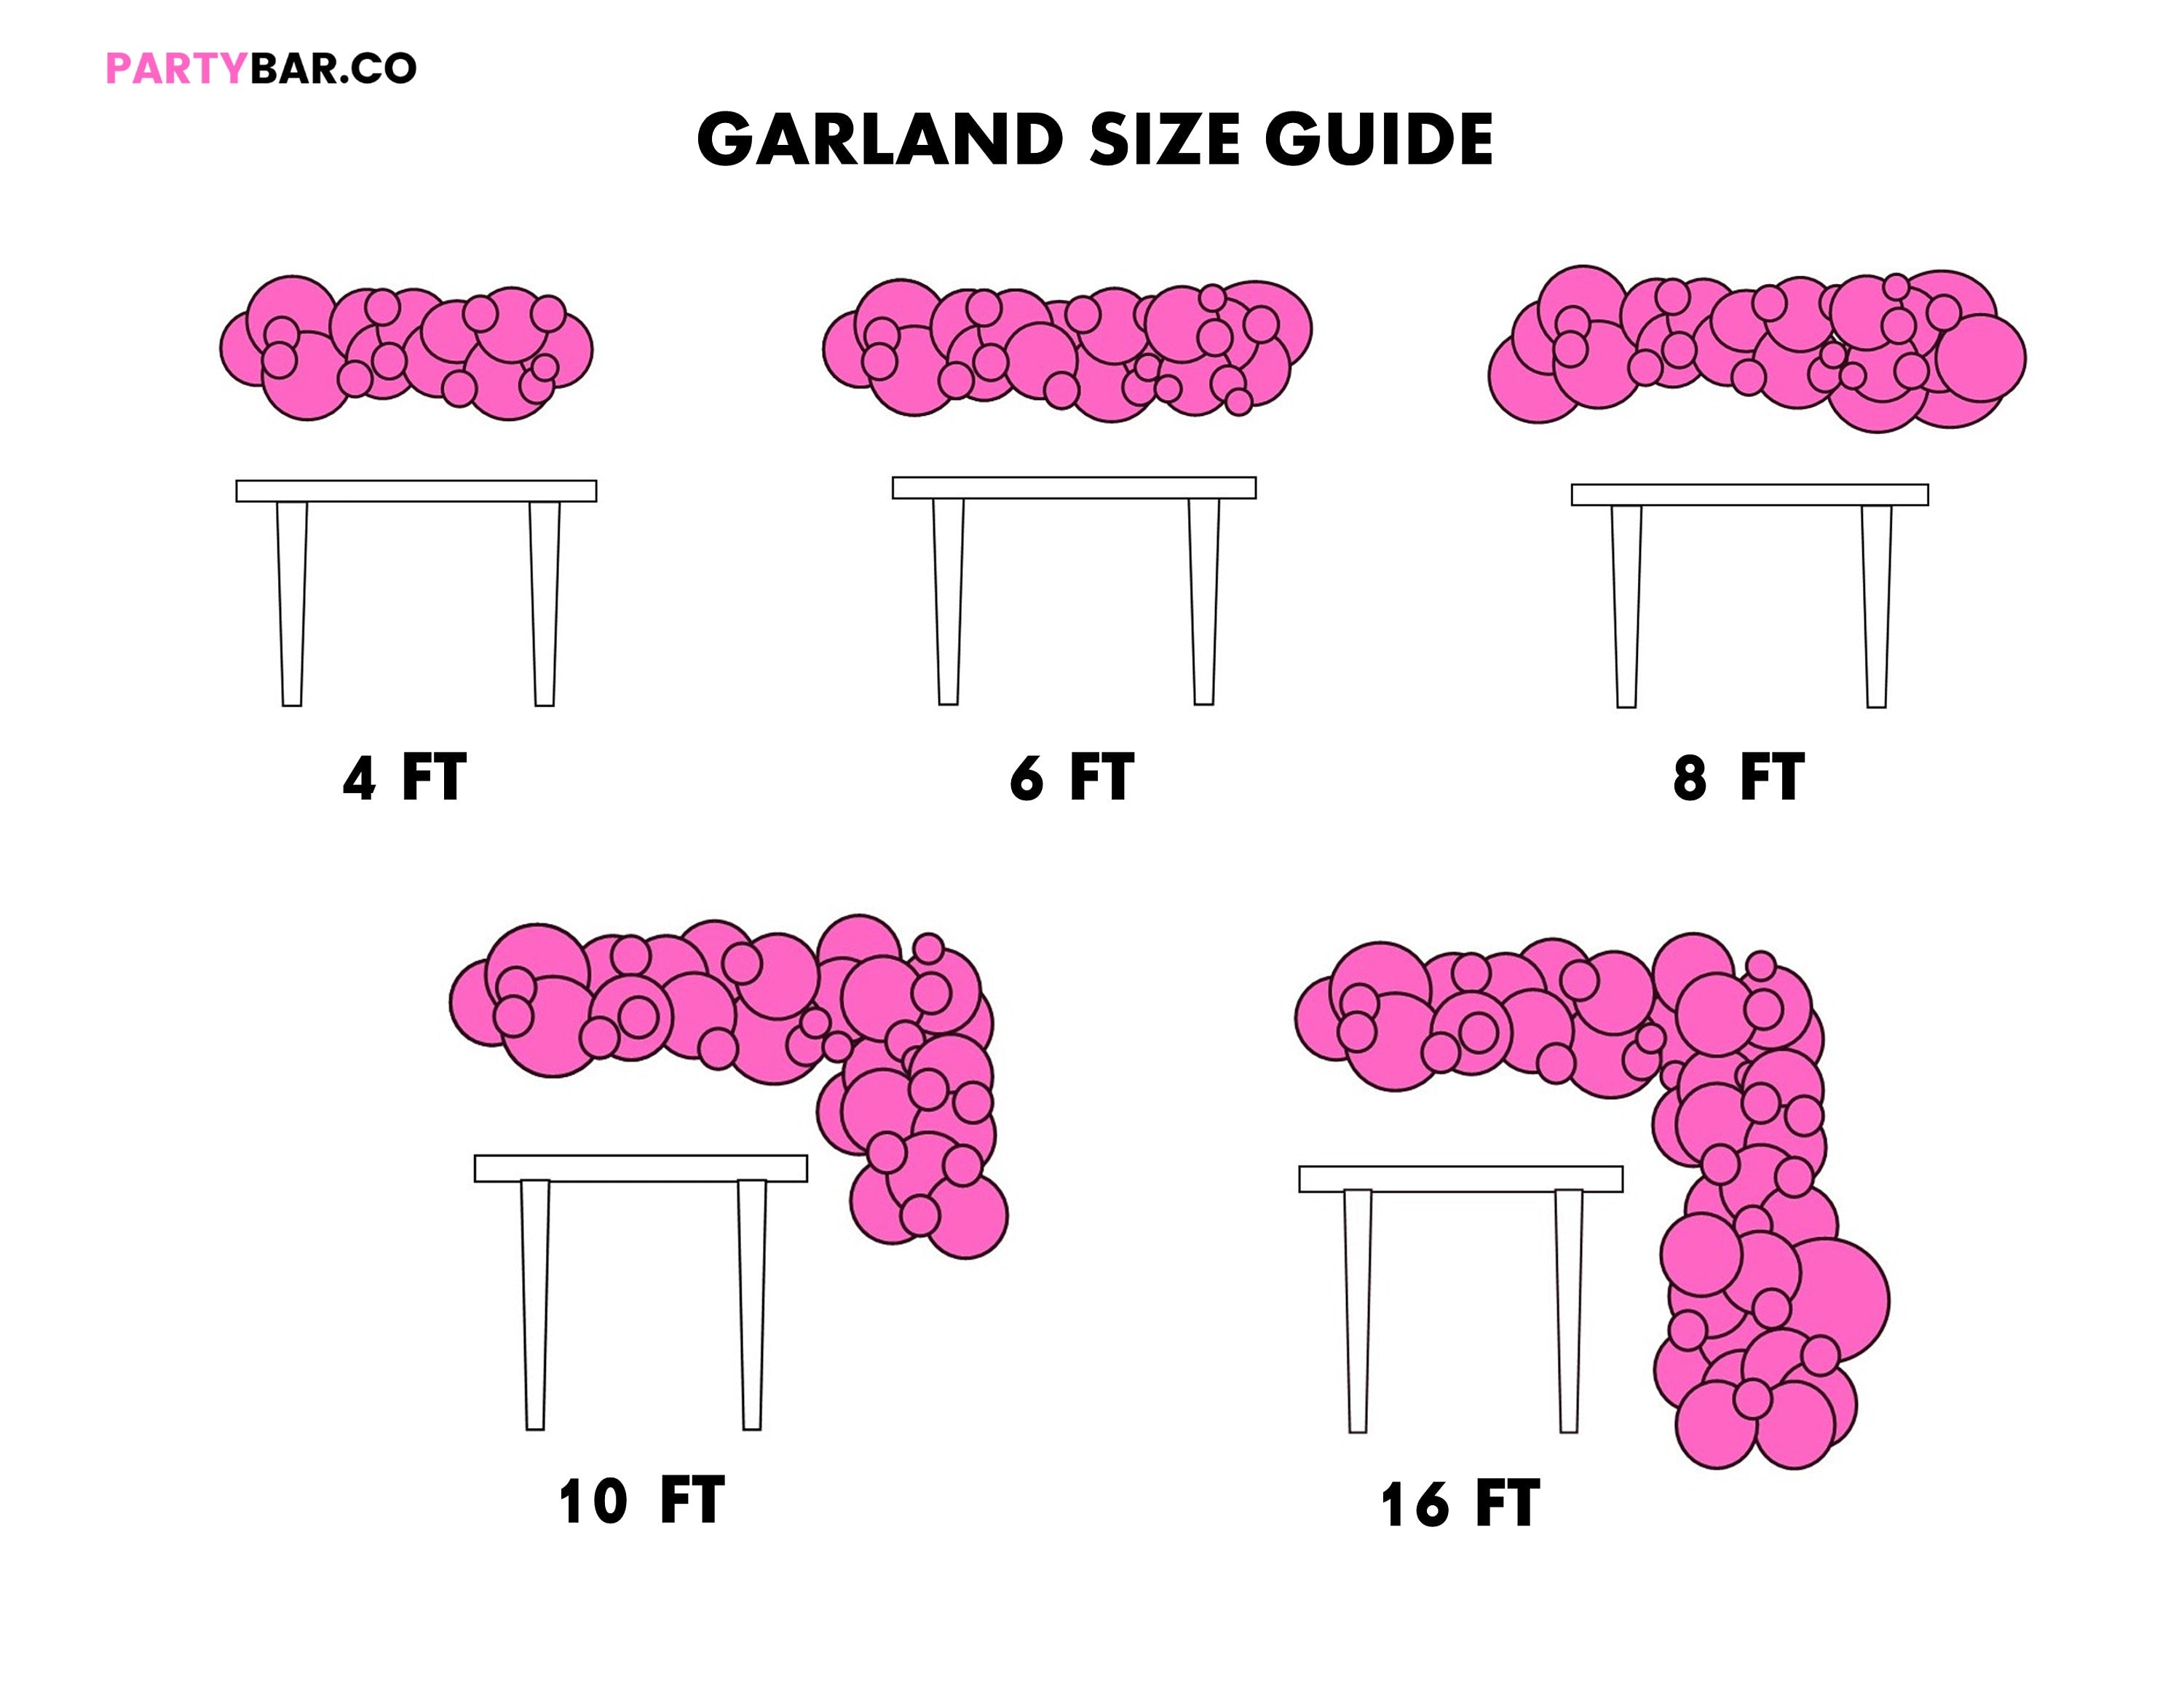 Balloon Garland Review DIY, Frozen Balloon Garland DIY, Tutorial